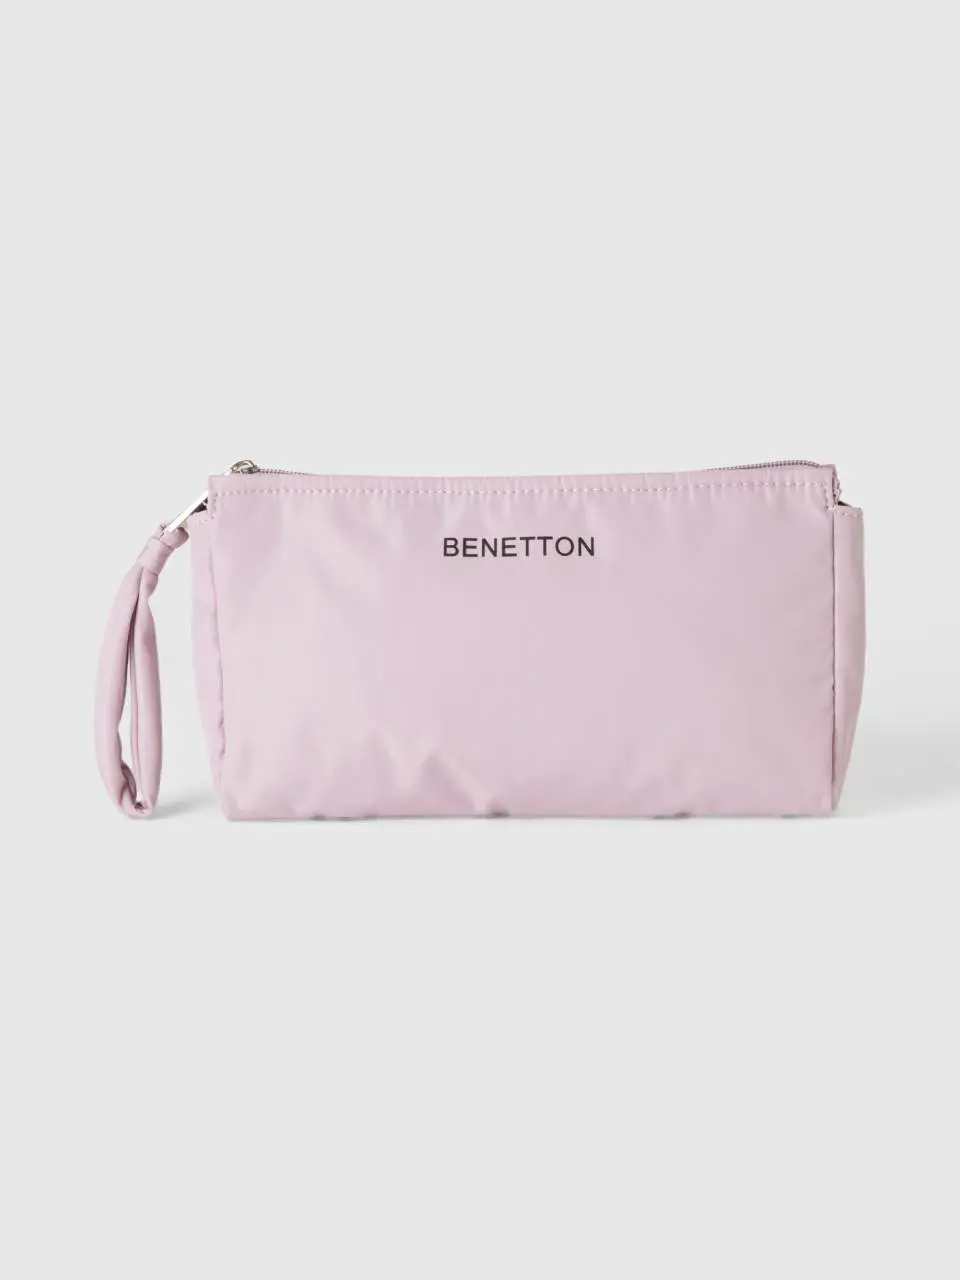 Benetton nylon beauty case. 1